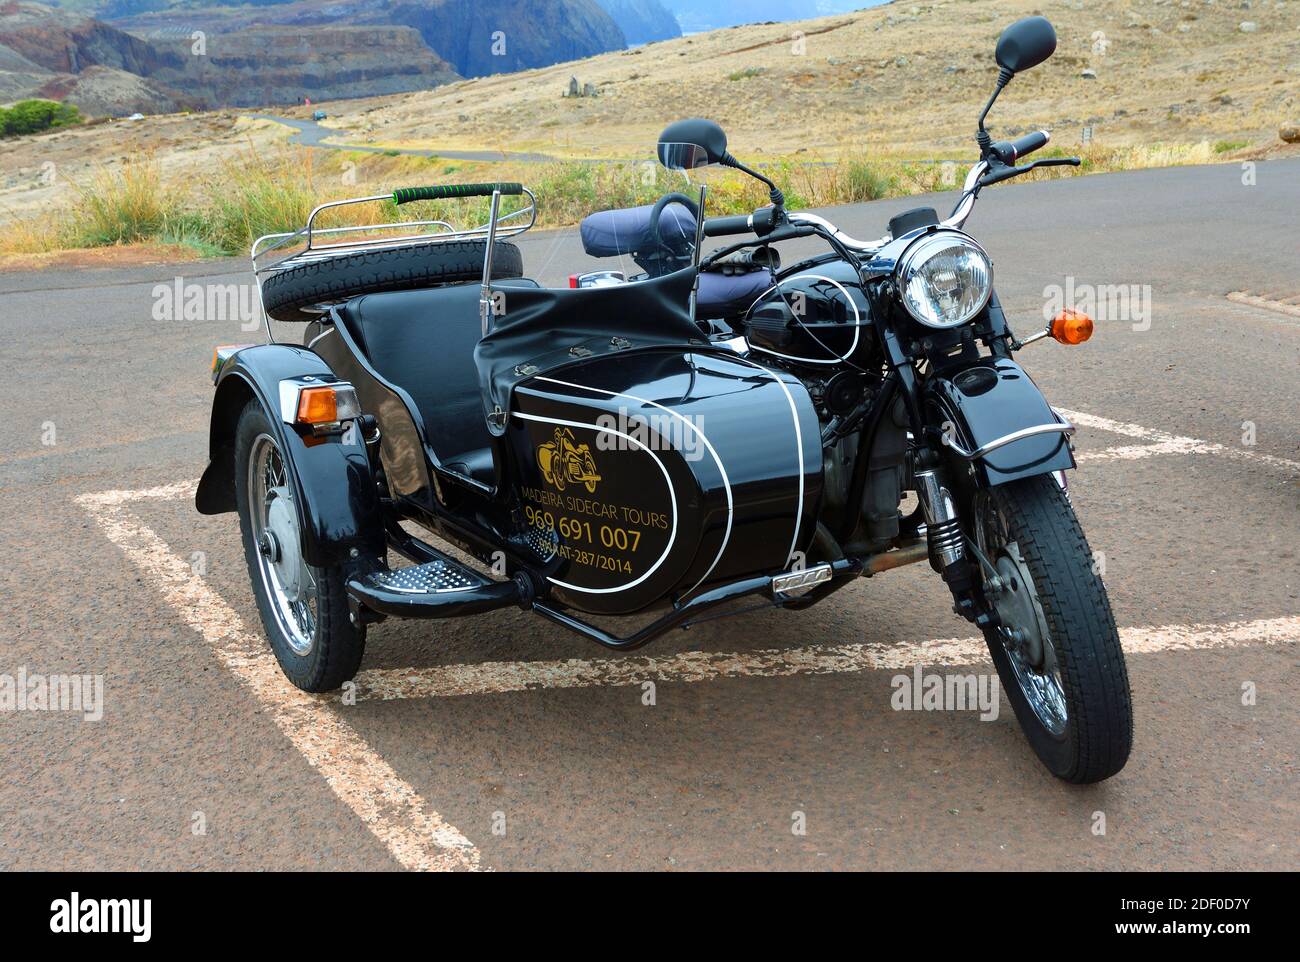 La classica motocicletta e Sidecar usavano per offrire tour dell'isola. Foto Stock